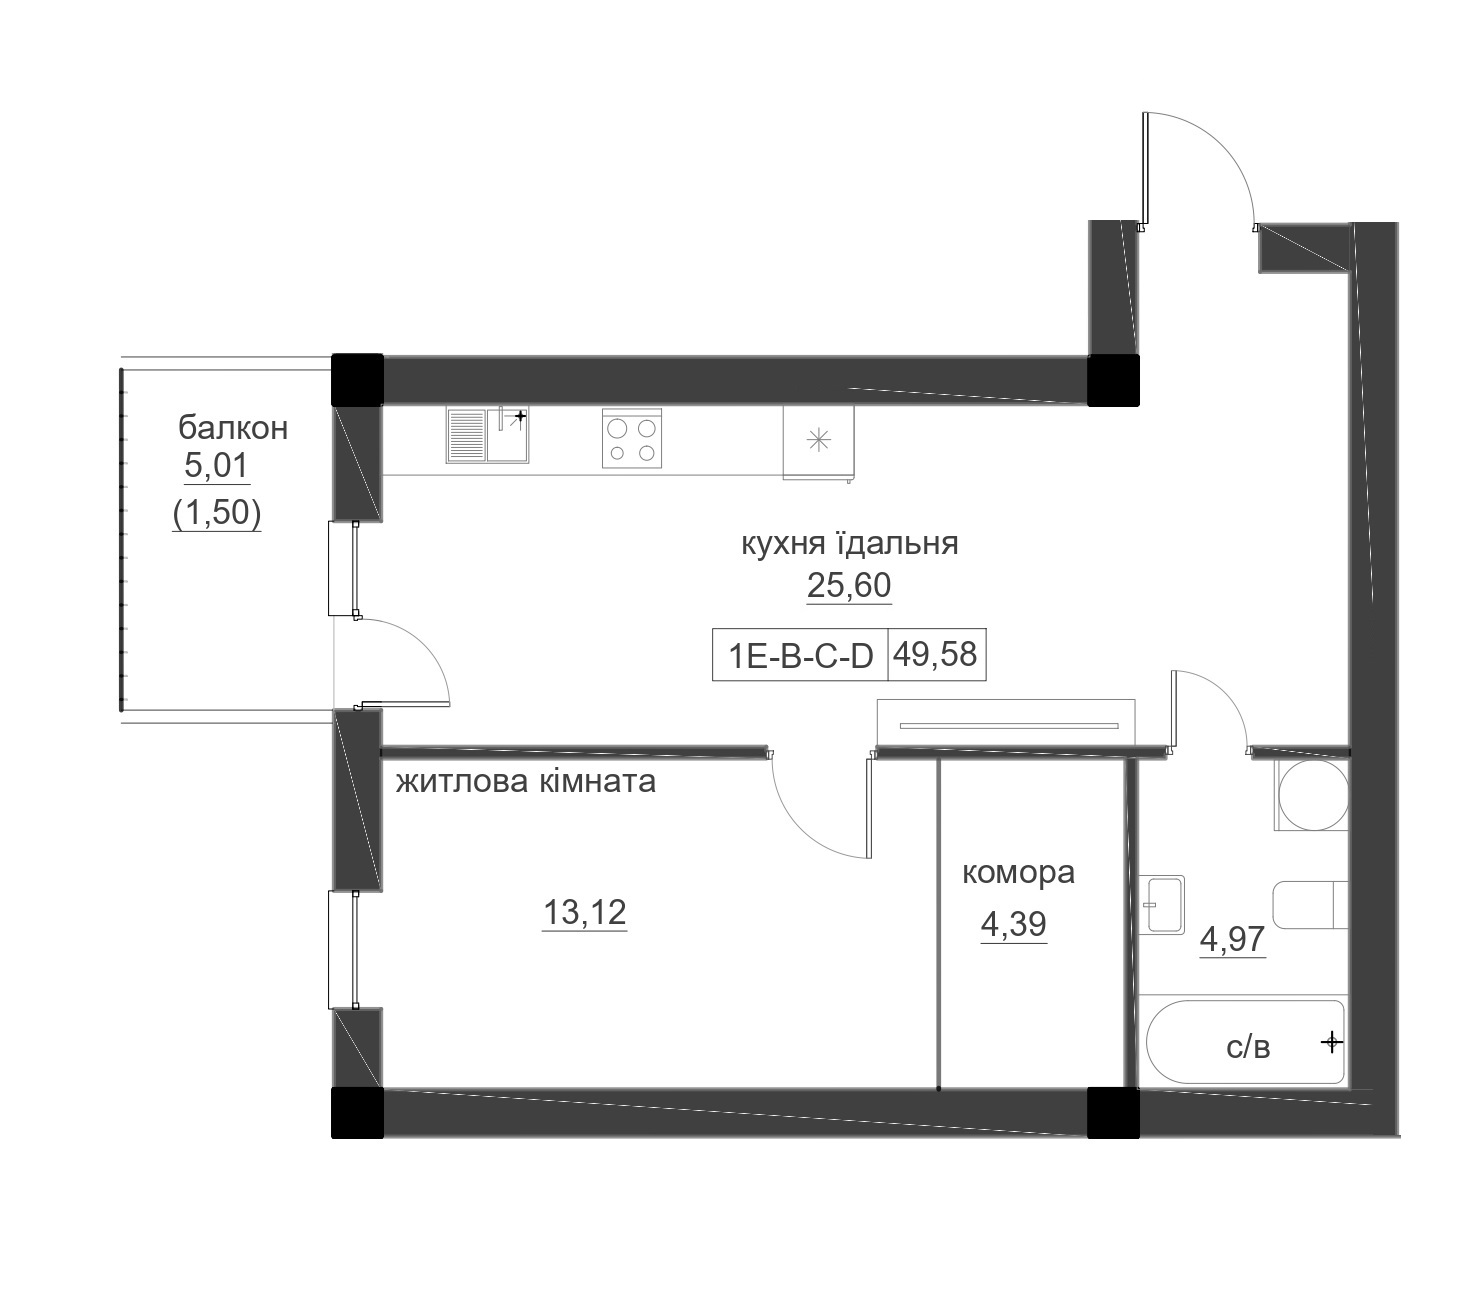 Планировка 1-к квартира площей 49.58м2, LR-005-05/0005.